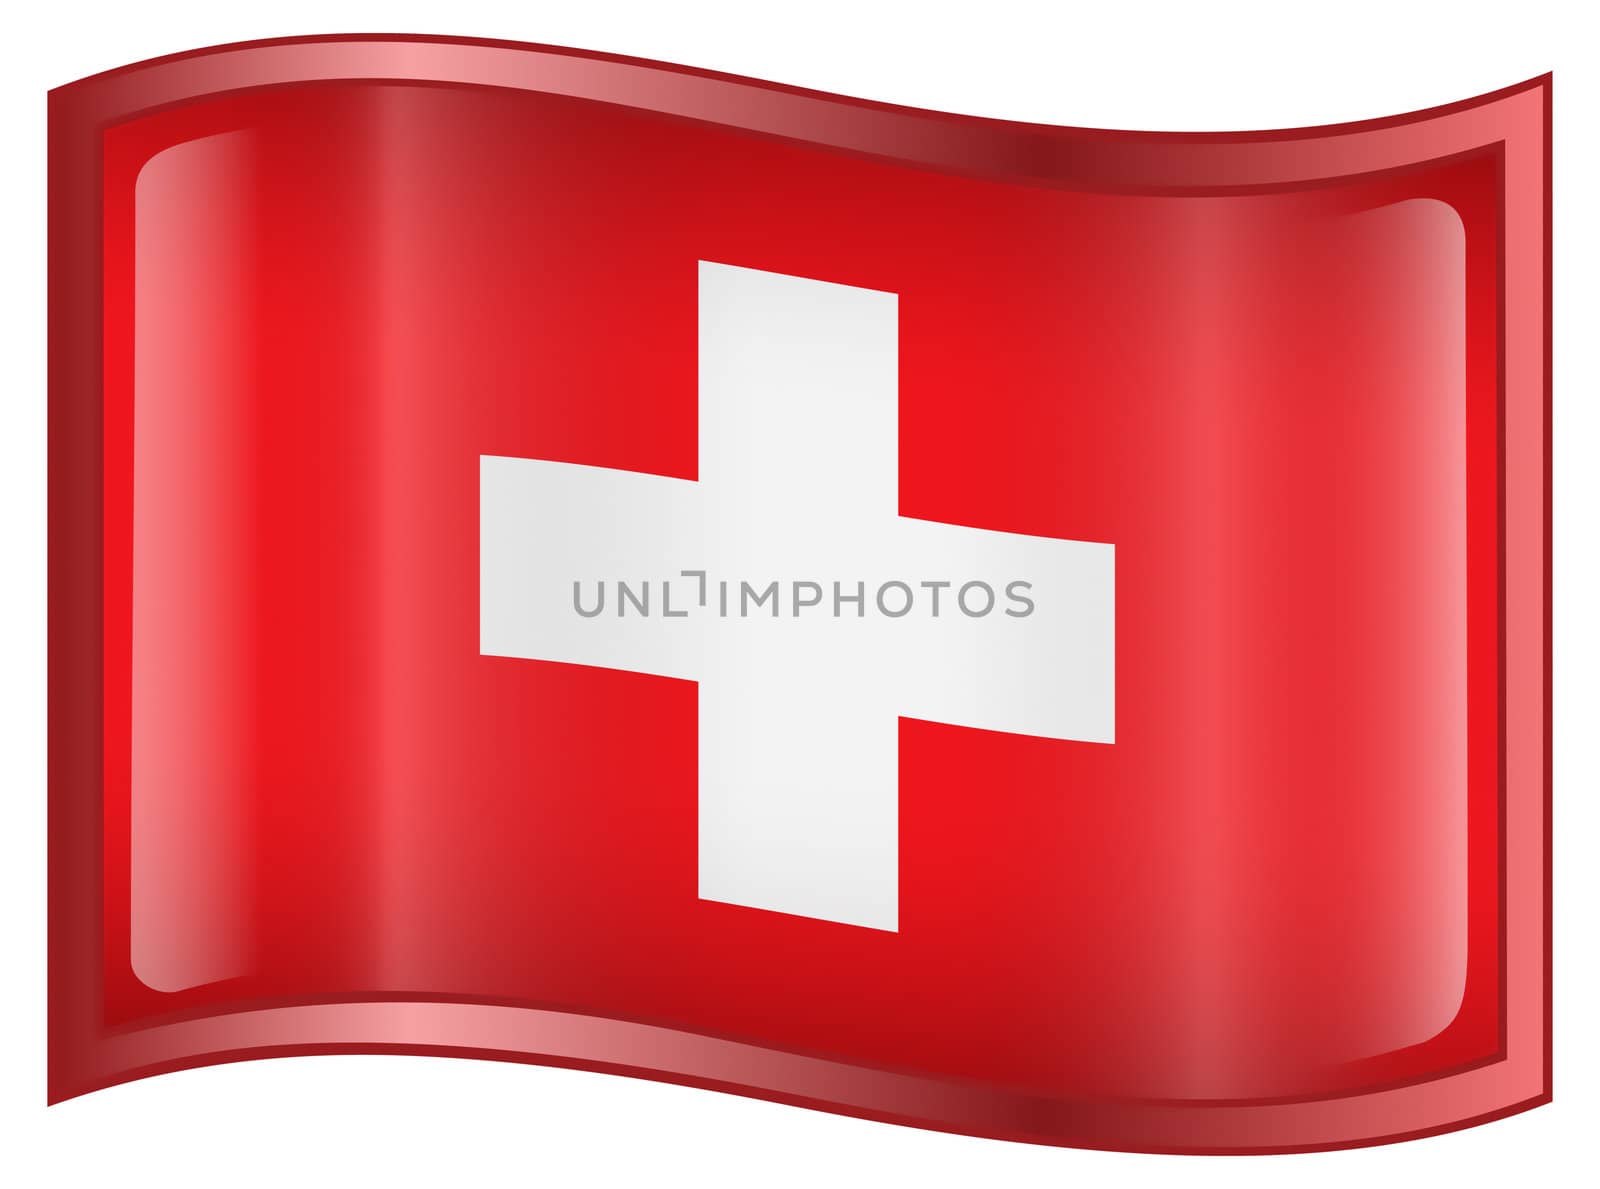 Switzerland Flag icon, isolated on white background.